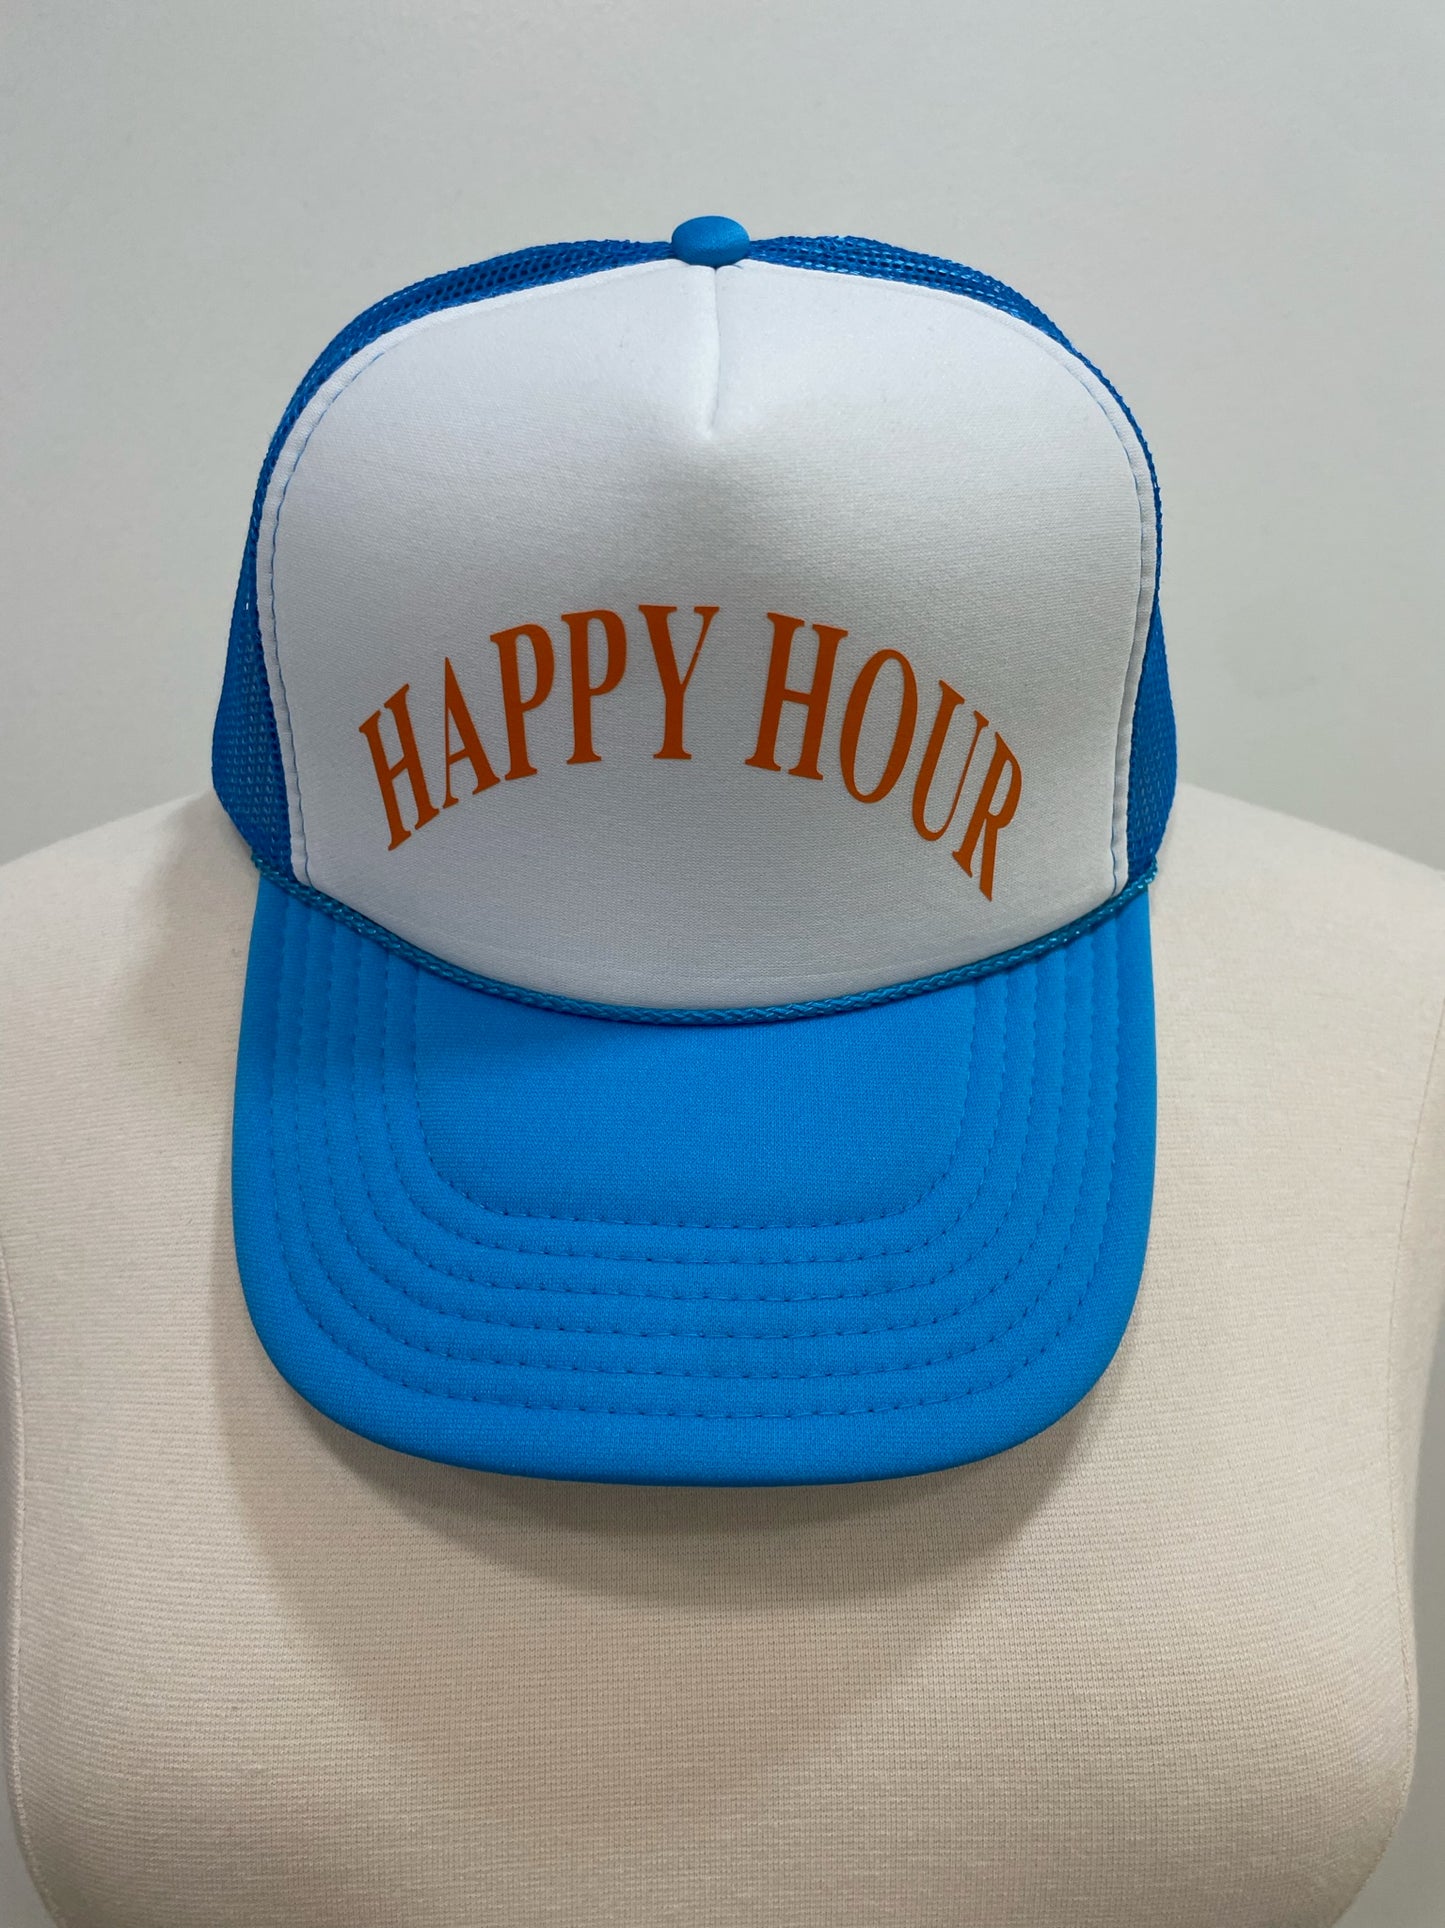 Happy Hour - Trucker Hat